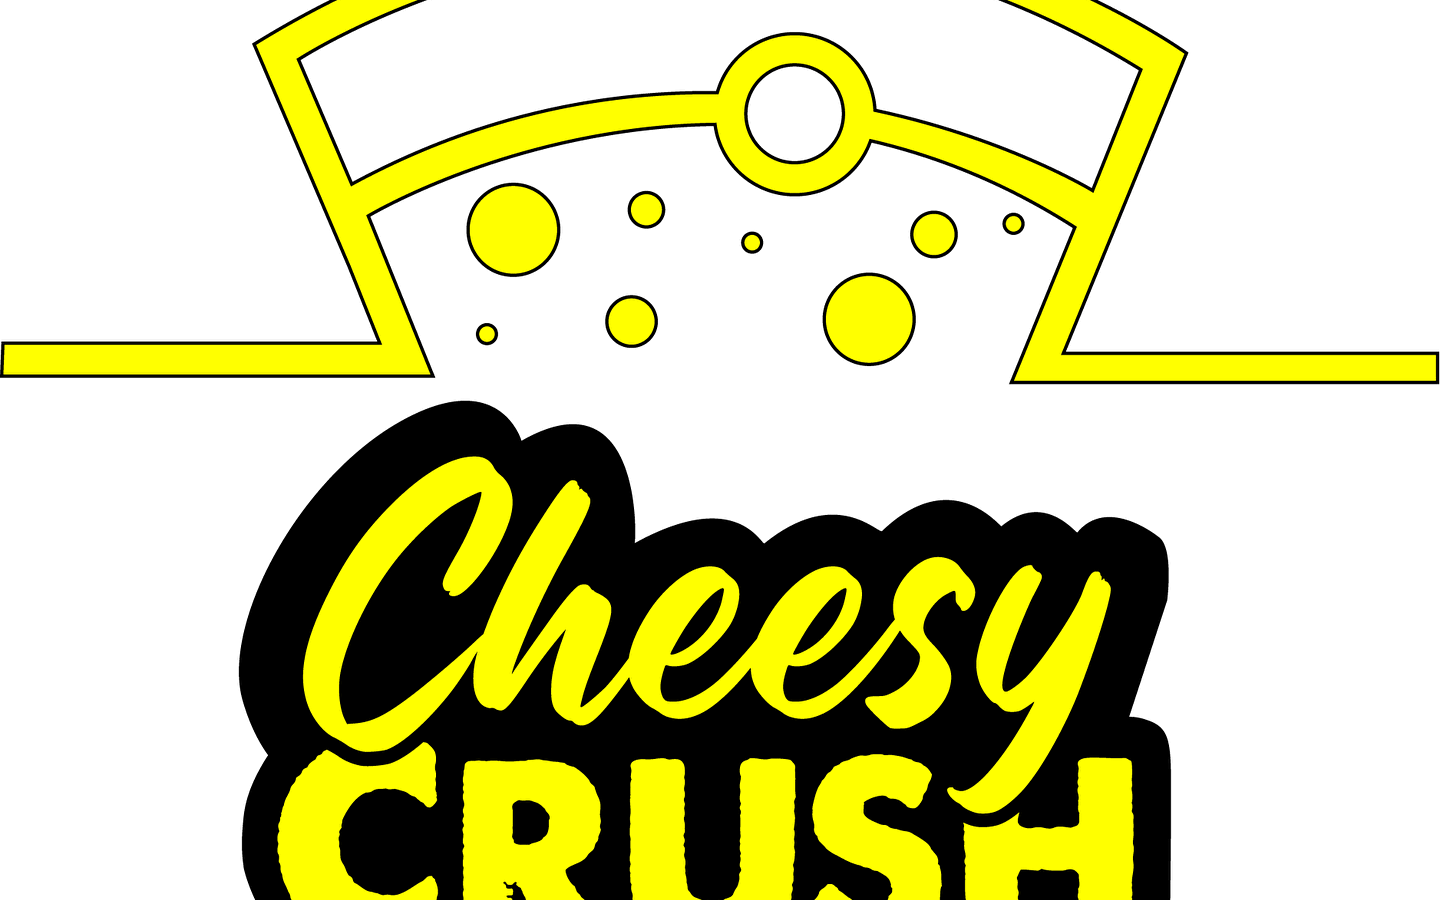 Cheesy Crush